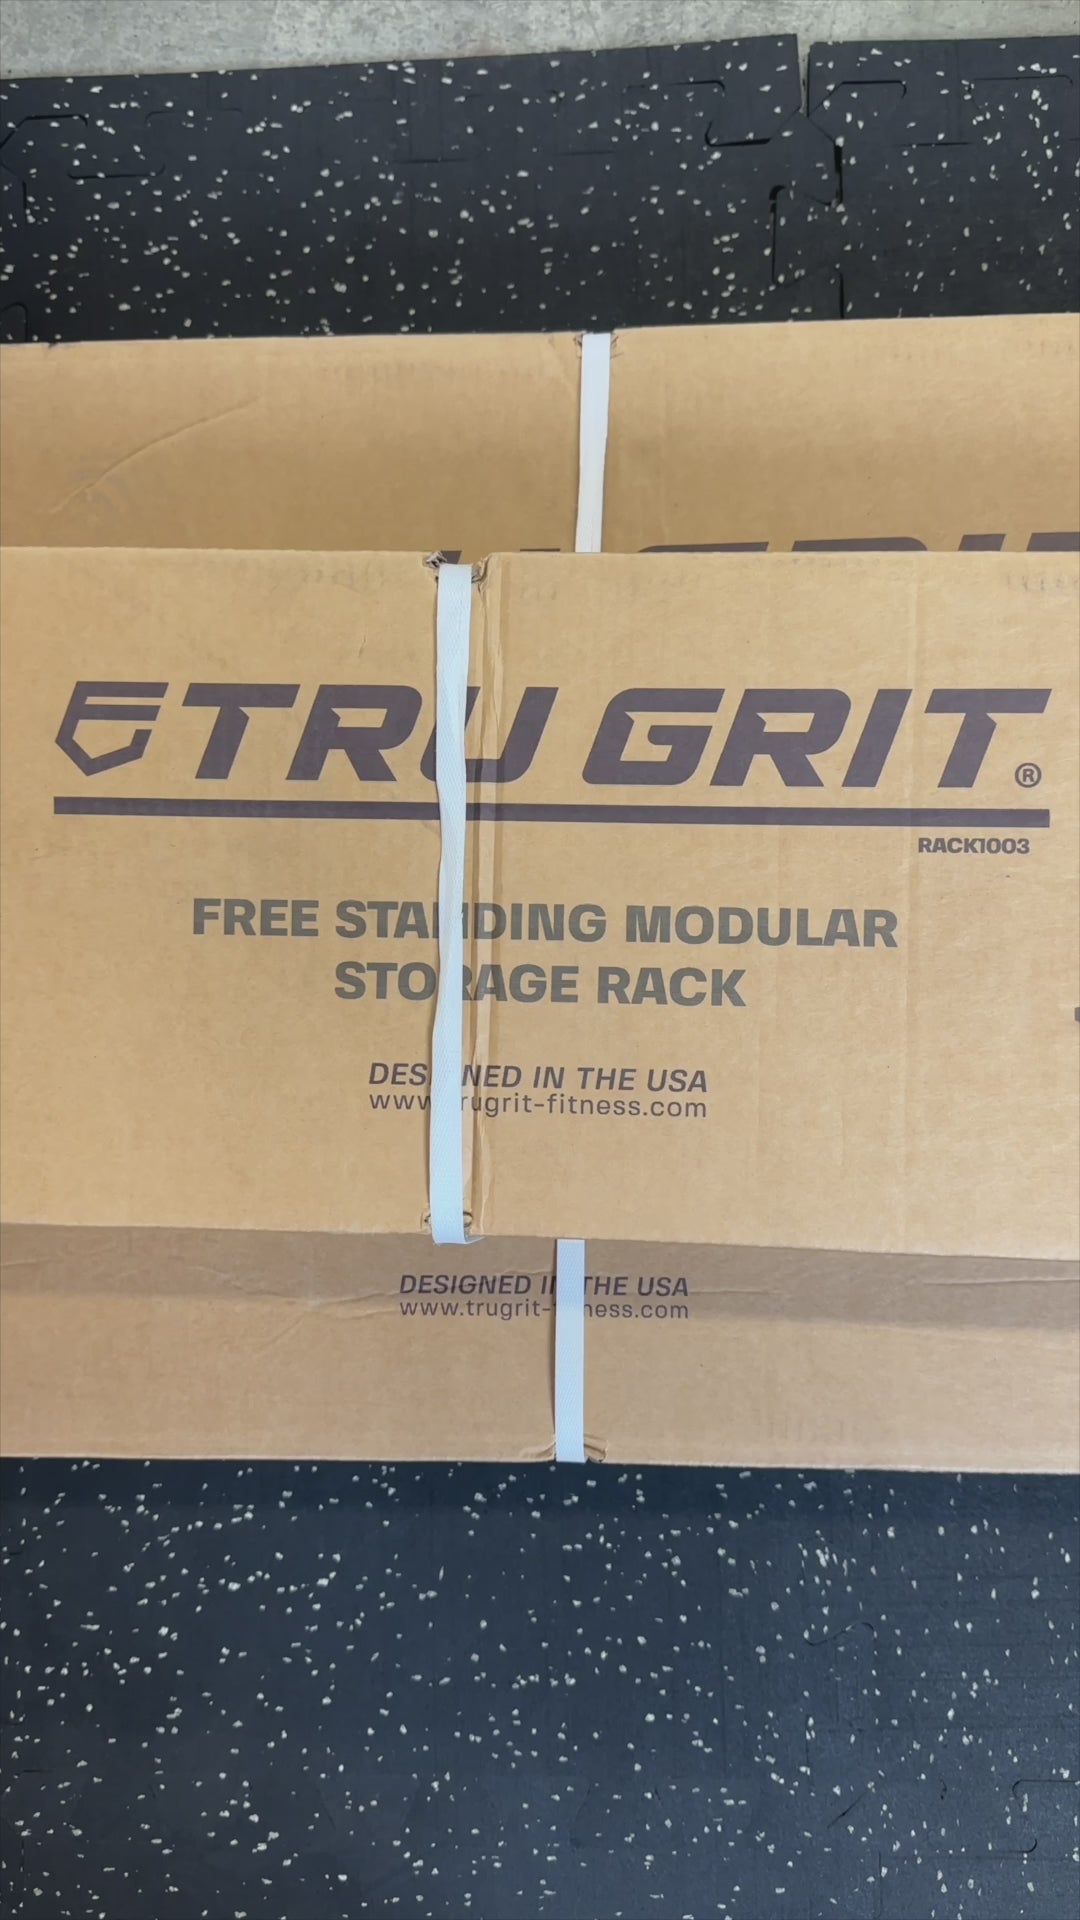 Free Standing Modular Storage Rack